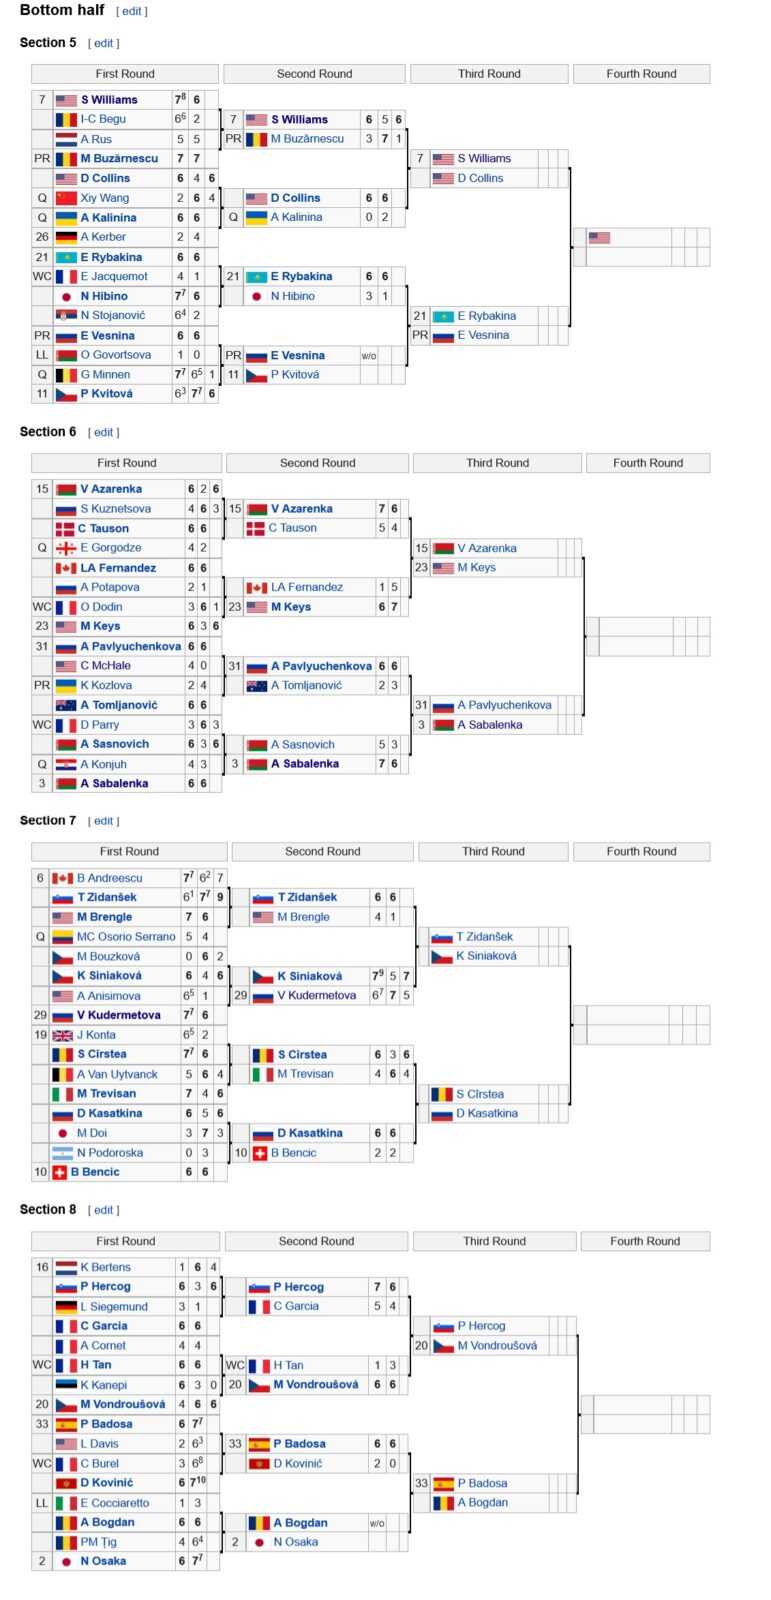 Ролан Гаррос 2021, турнирная сетка ВТА (женщины)